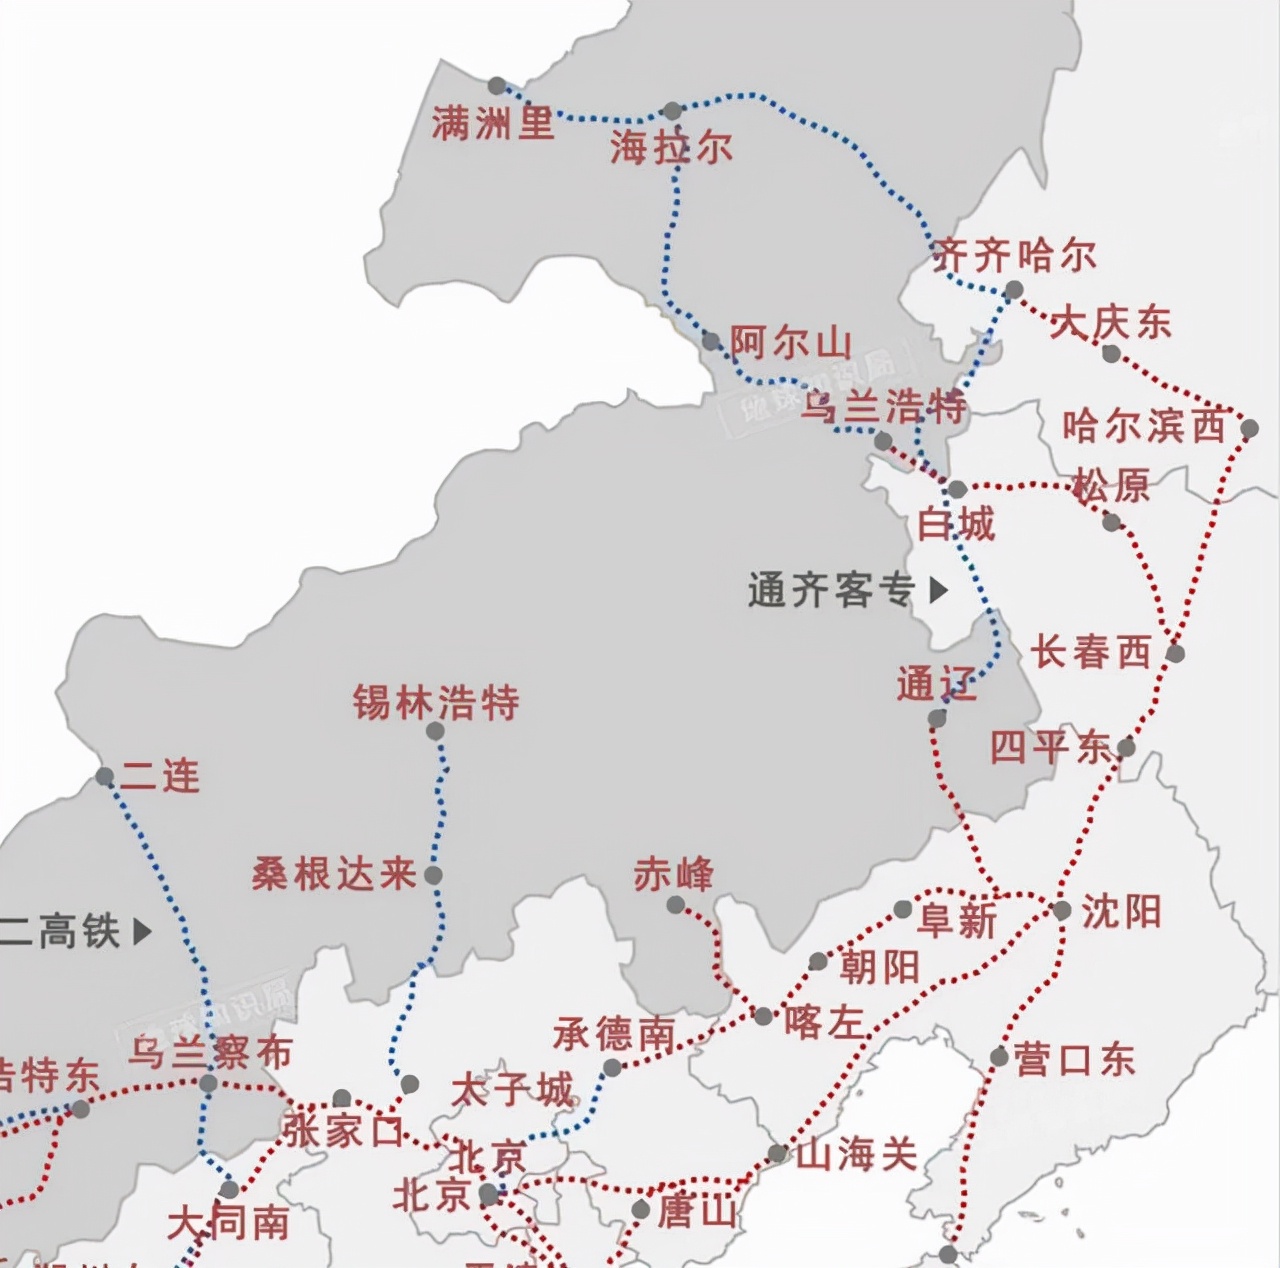 通辽北京高铁路线图图片